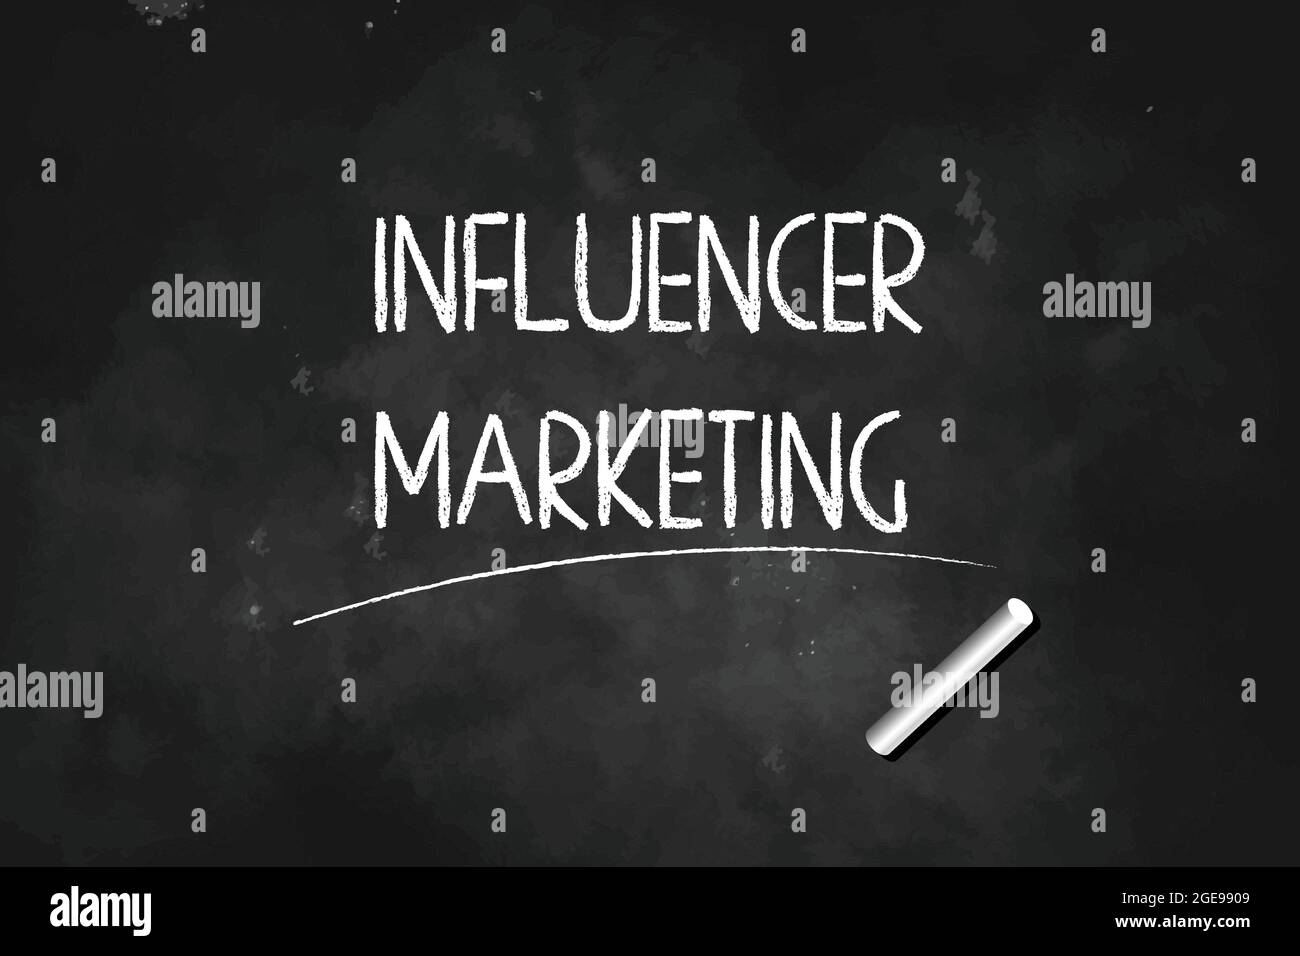 Influencer-Marketing mit Kreide auf schwarzem Brett Vektorgrafik geschrieben Stock Vektor